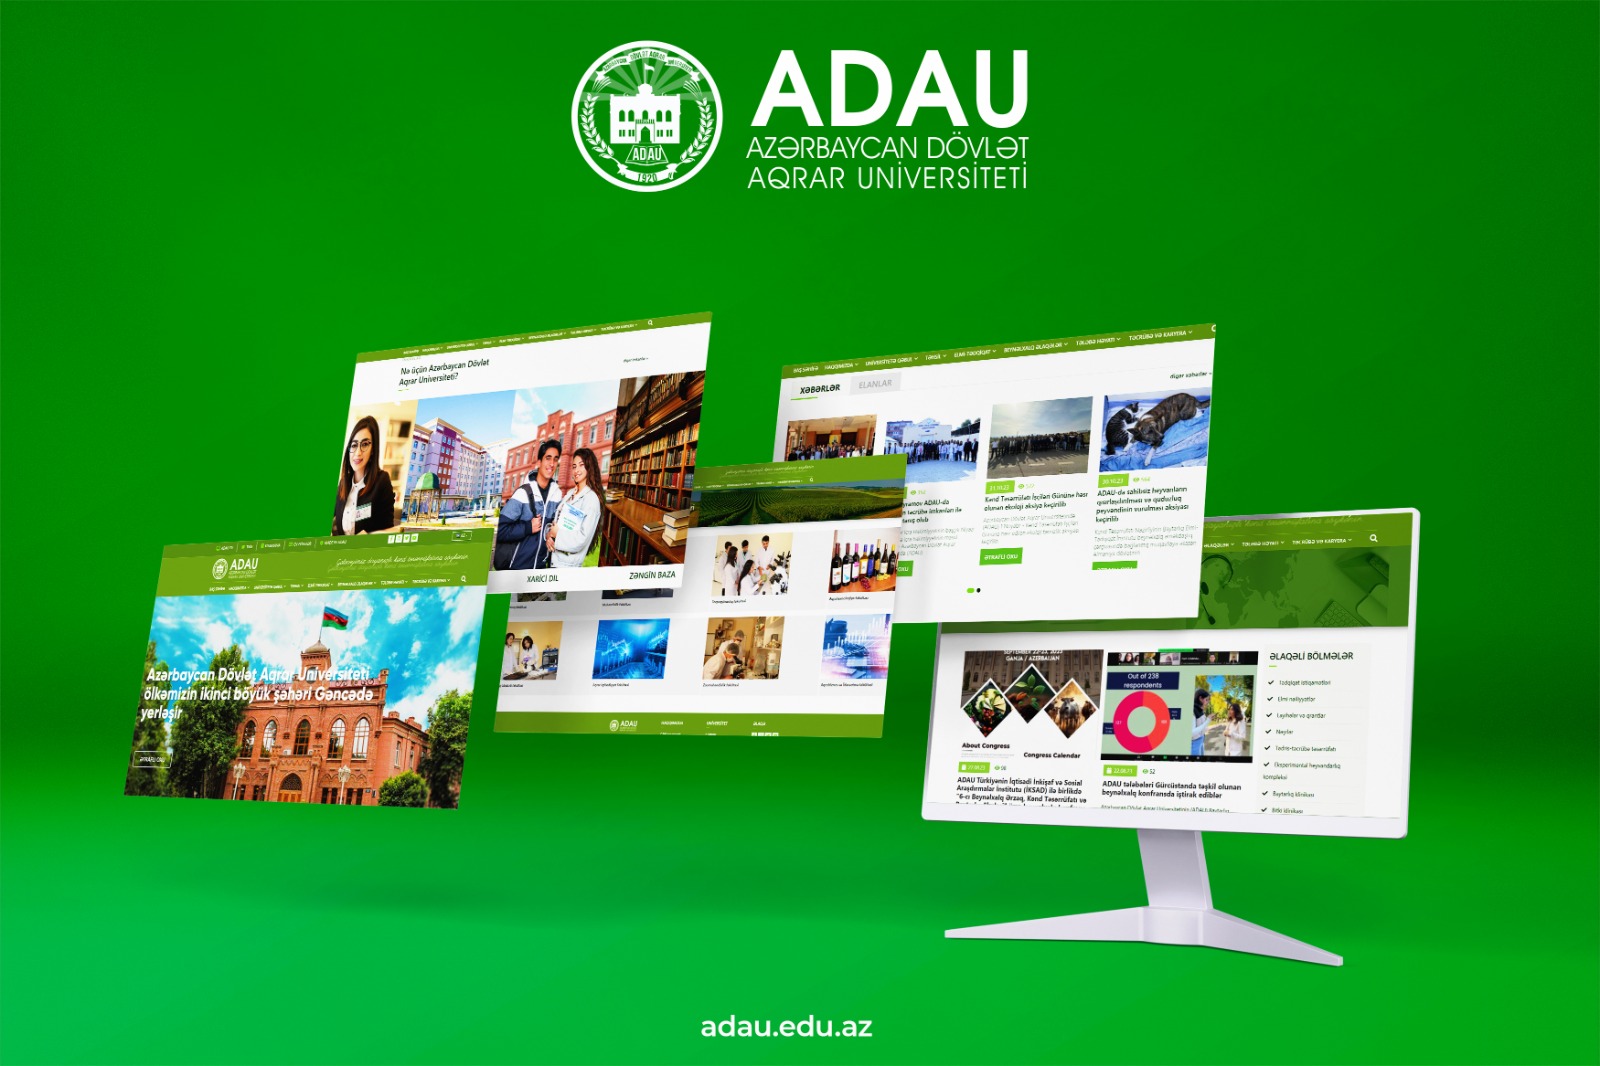 Aqrar Universitetin rəsmi internet saytı peşəkar internet mükafatı üzrə müsabiqədə iştirak edir